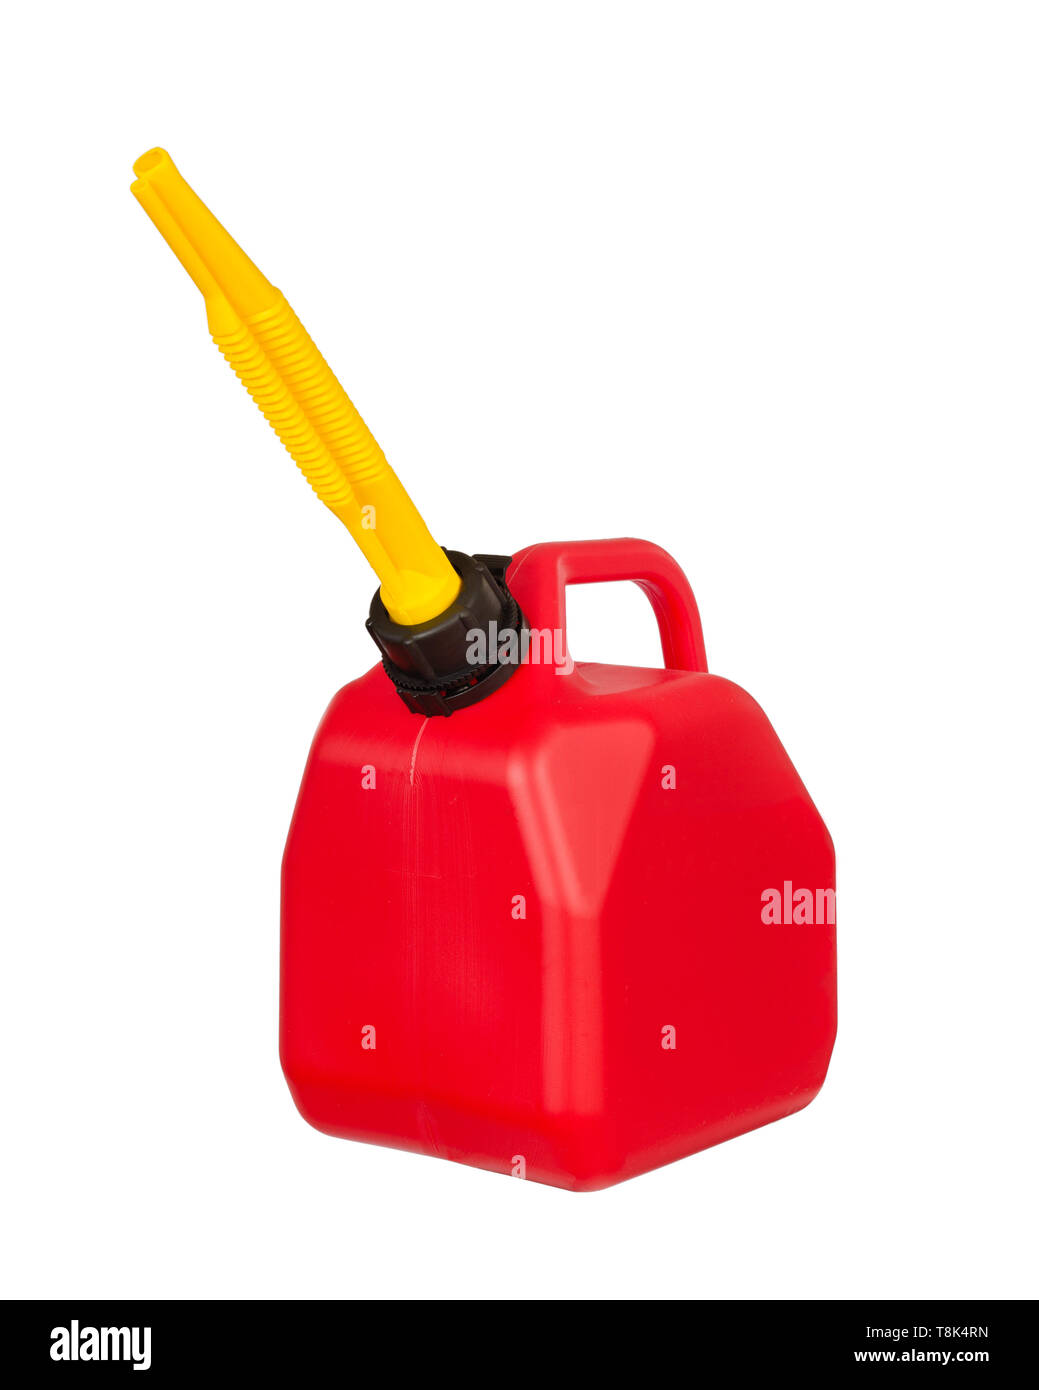 Rot Kraftstoff Benzin oder Container mit gelben Auswurfkrümmer auf weißen  isoliert Stockfotografie - Alamy